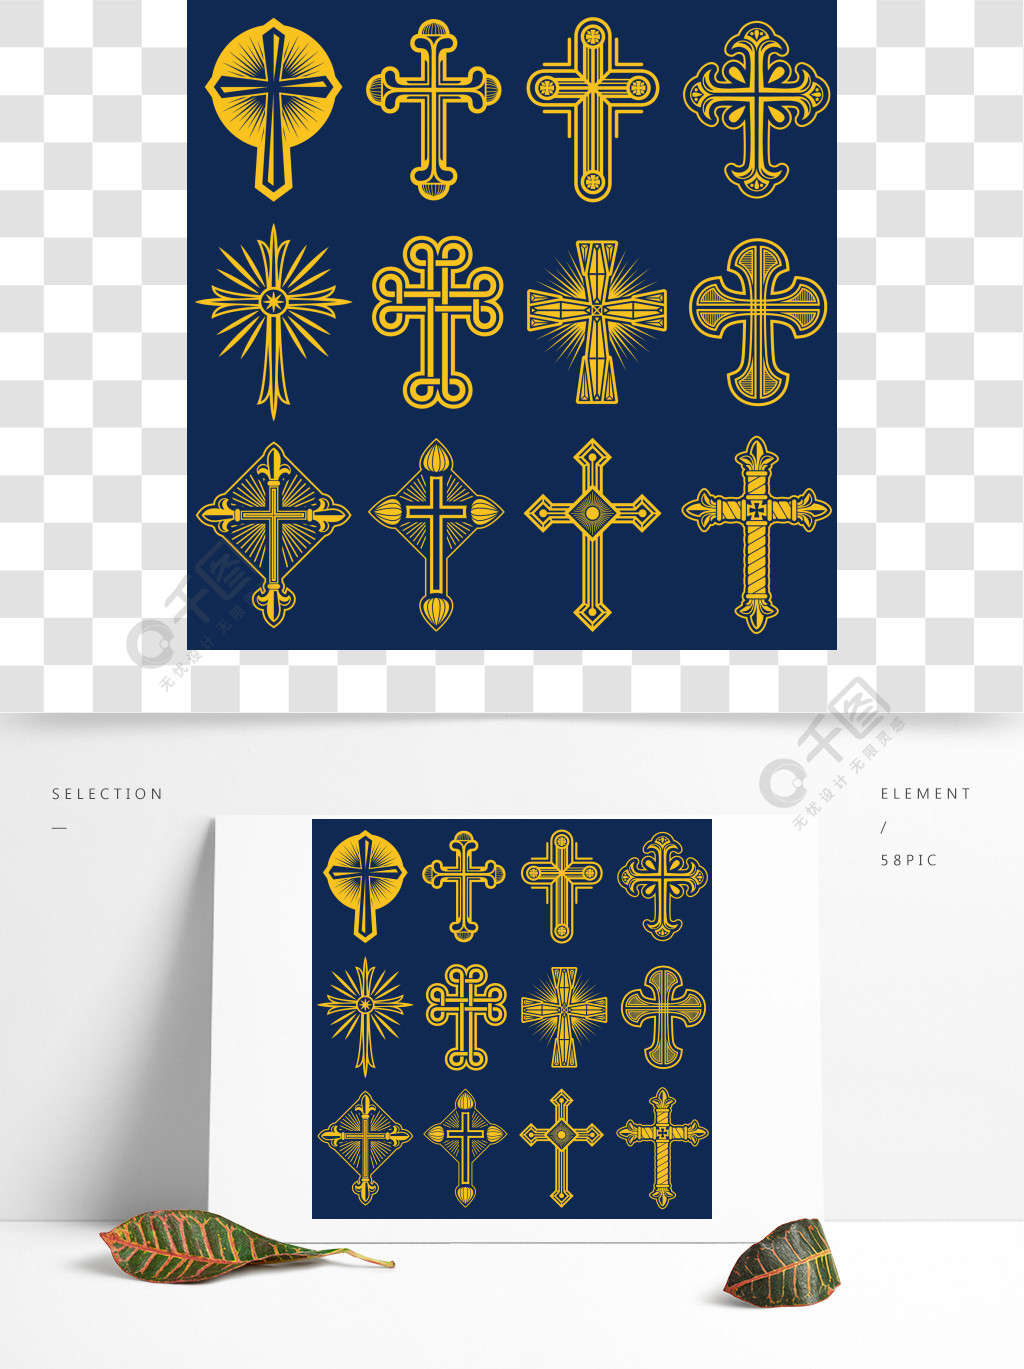 哥特式天主教十字架矢量图标,天主教符号基督教标志宗教,套基督教十字